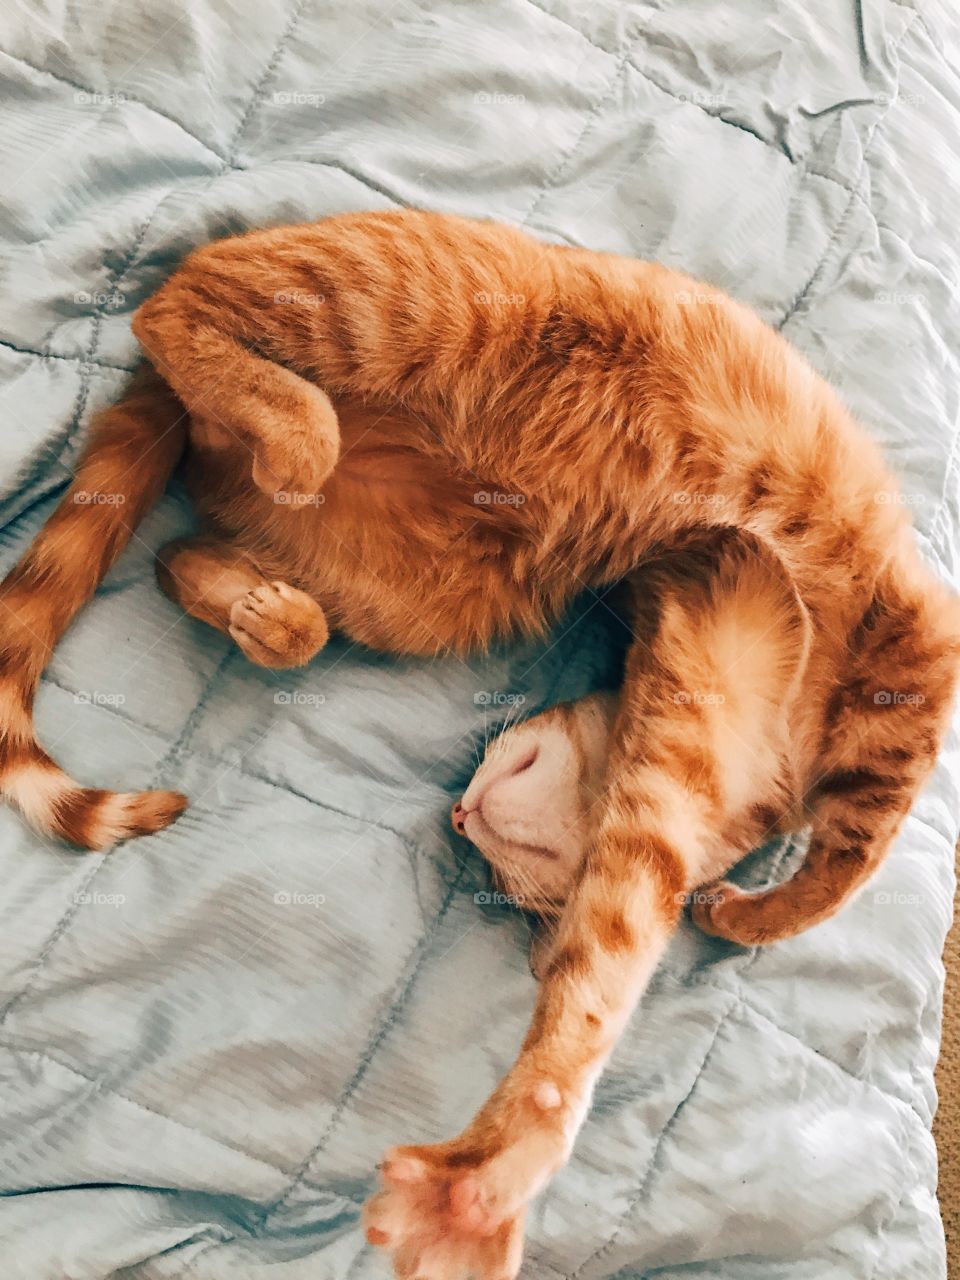 Cat stretch 